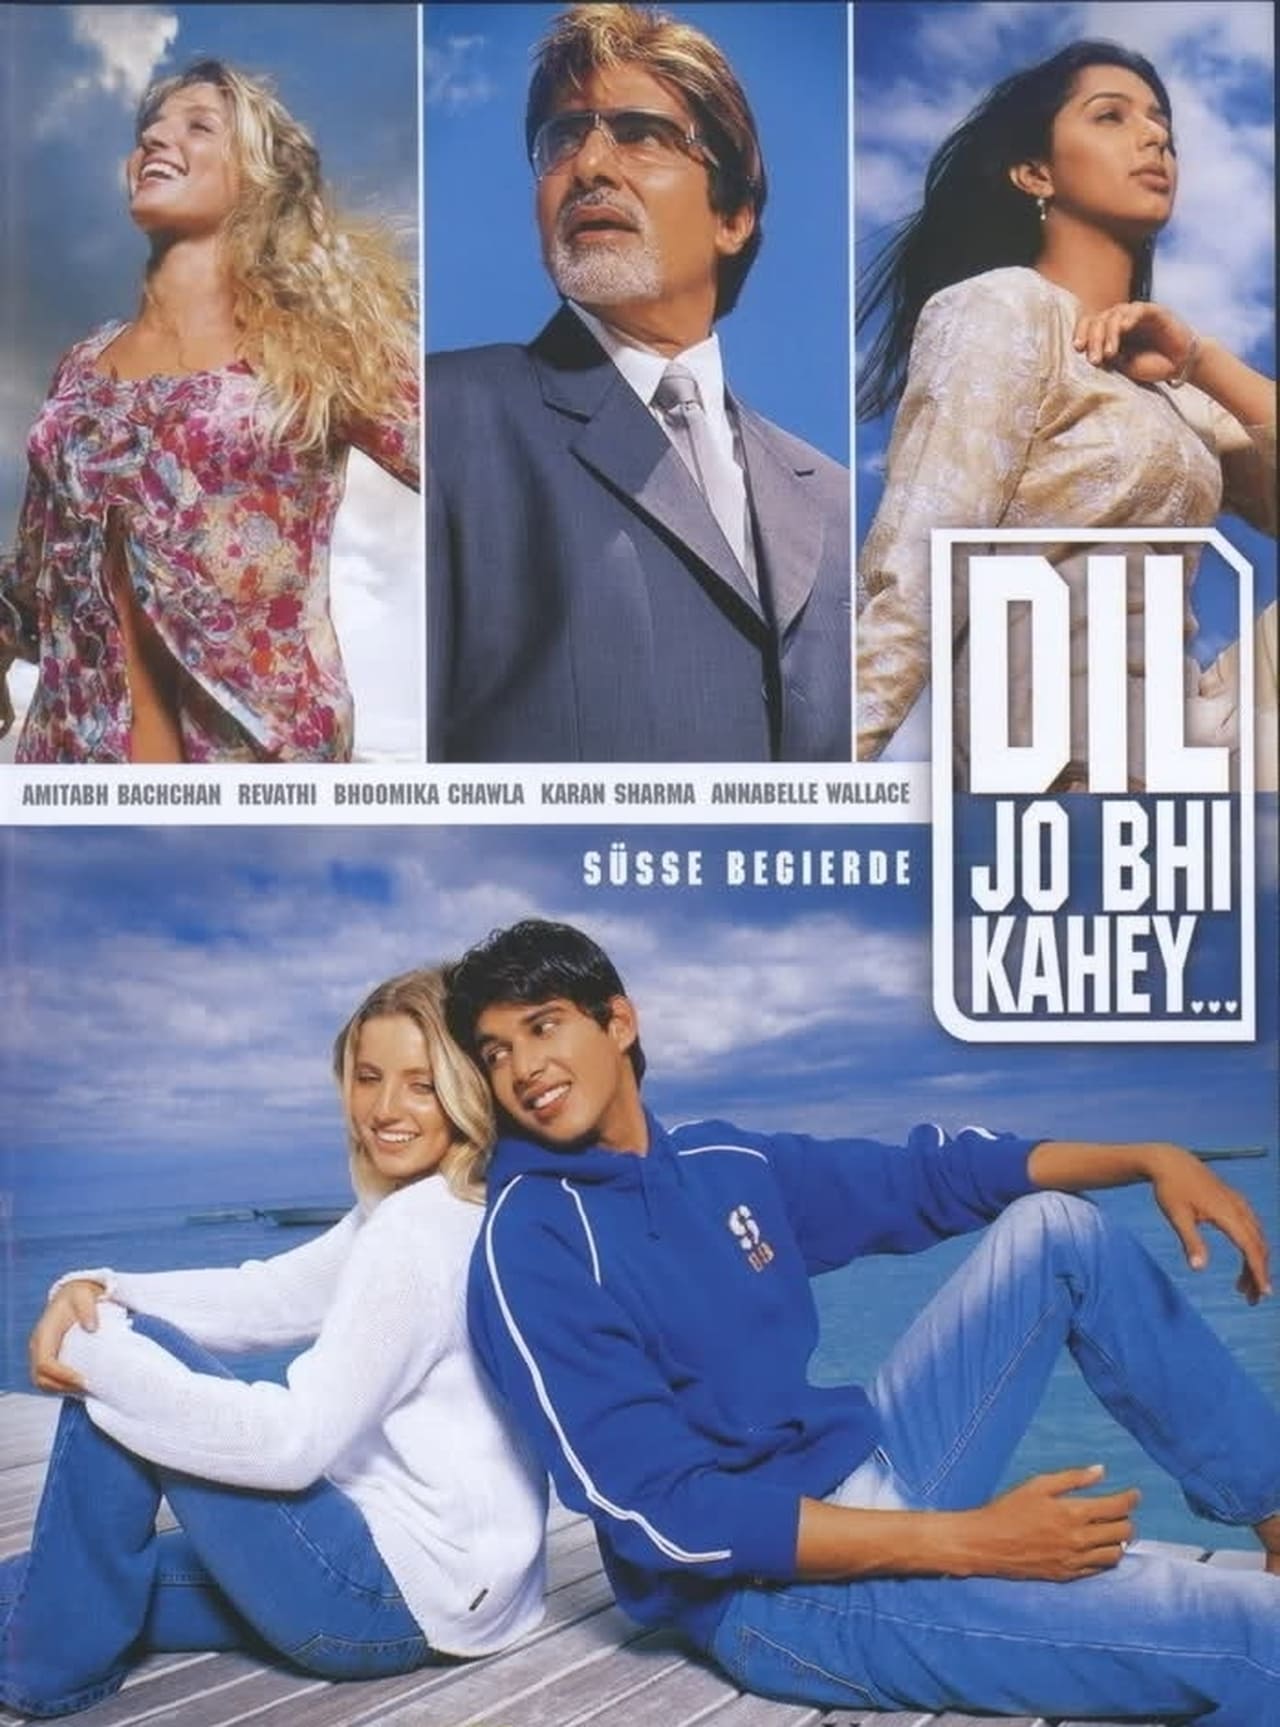 Dil Jo Bhi Kahey... (2006)